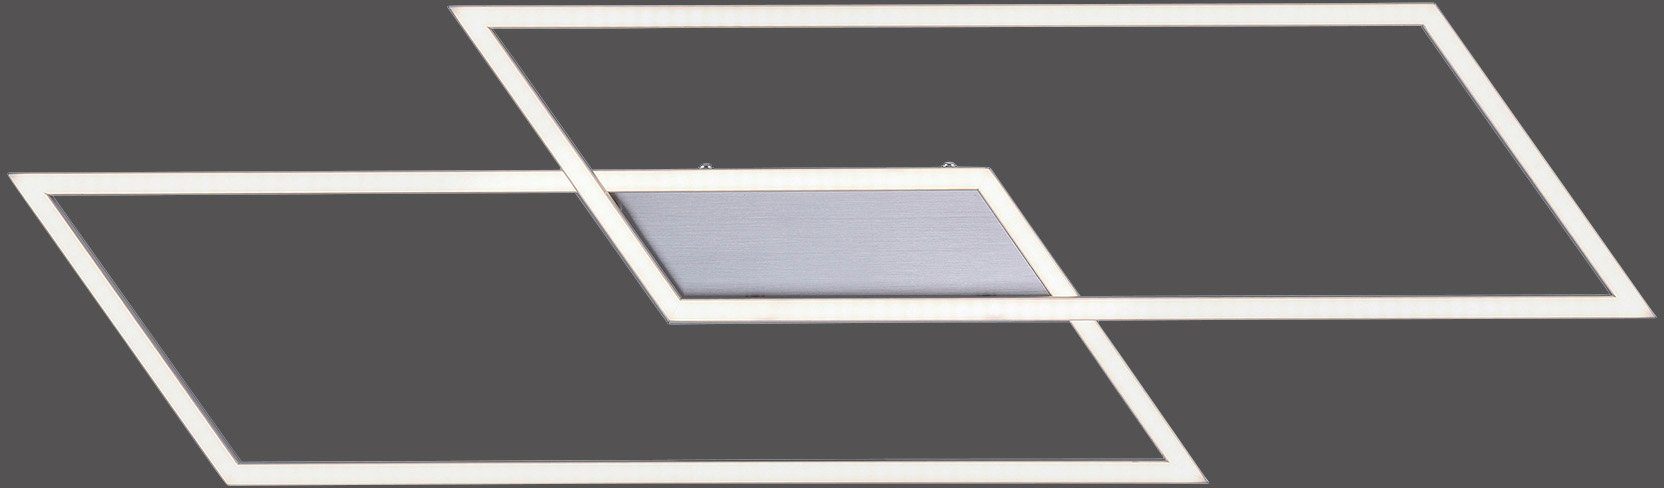 Neuhaus fest LED Wandschalter LED Deckenleuchte Paul dimmbar Inigo, vorhandenen Stufenlos Warmweiß, integriert, über Dimmfunktion,